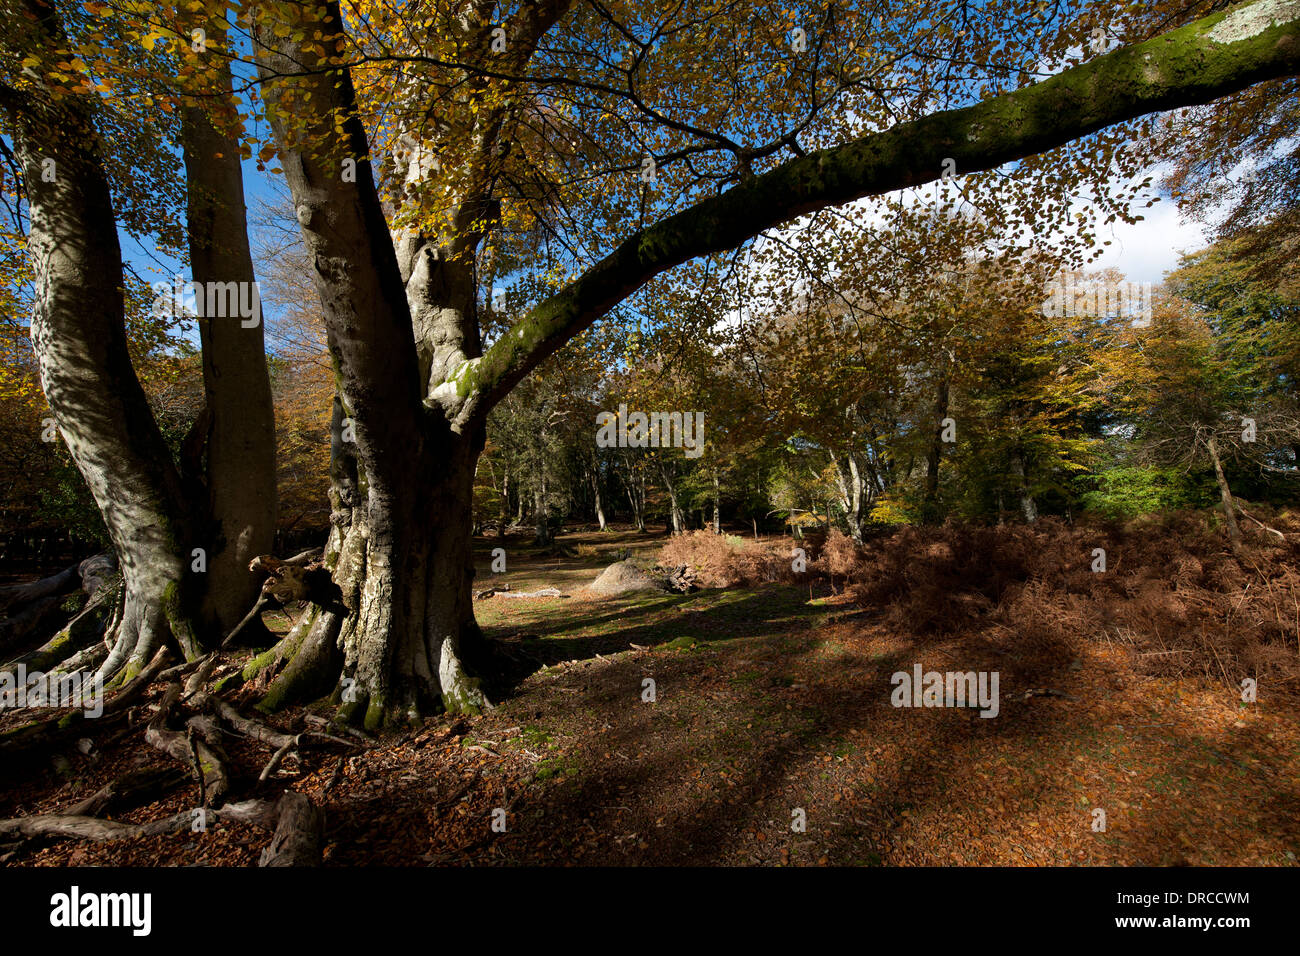 Beau paysage photographie prise au niveau de la marque de bois de frêne, New Forest, Hampshire, Angleterre, Royaume-Uni. Banque D'Images